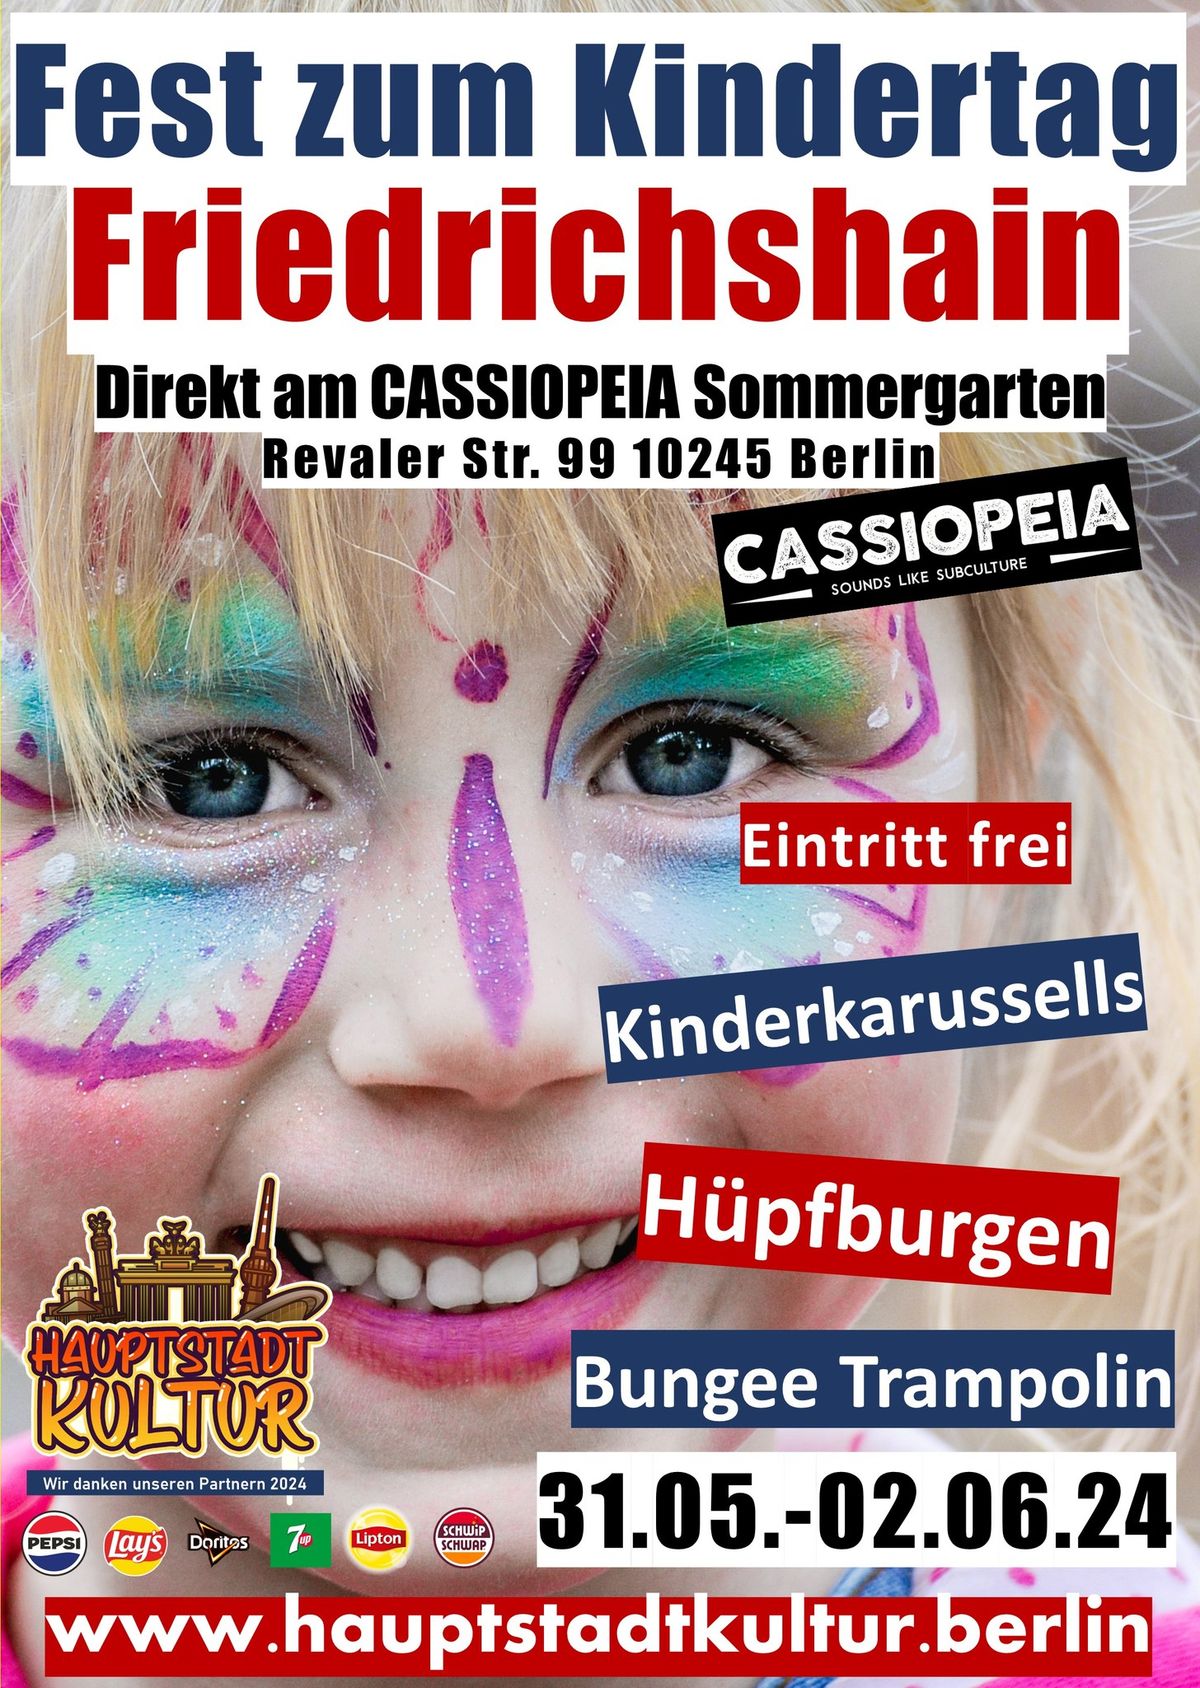 Fest zum Kindertag Friedrichshain